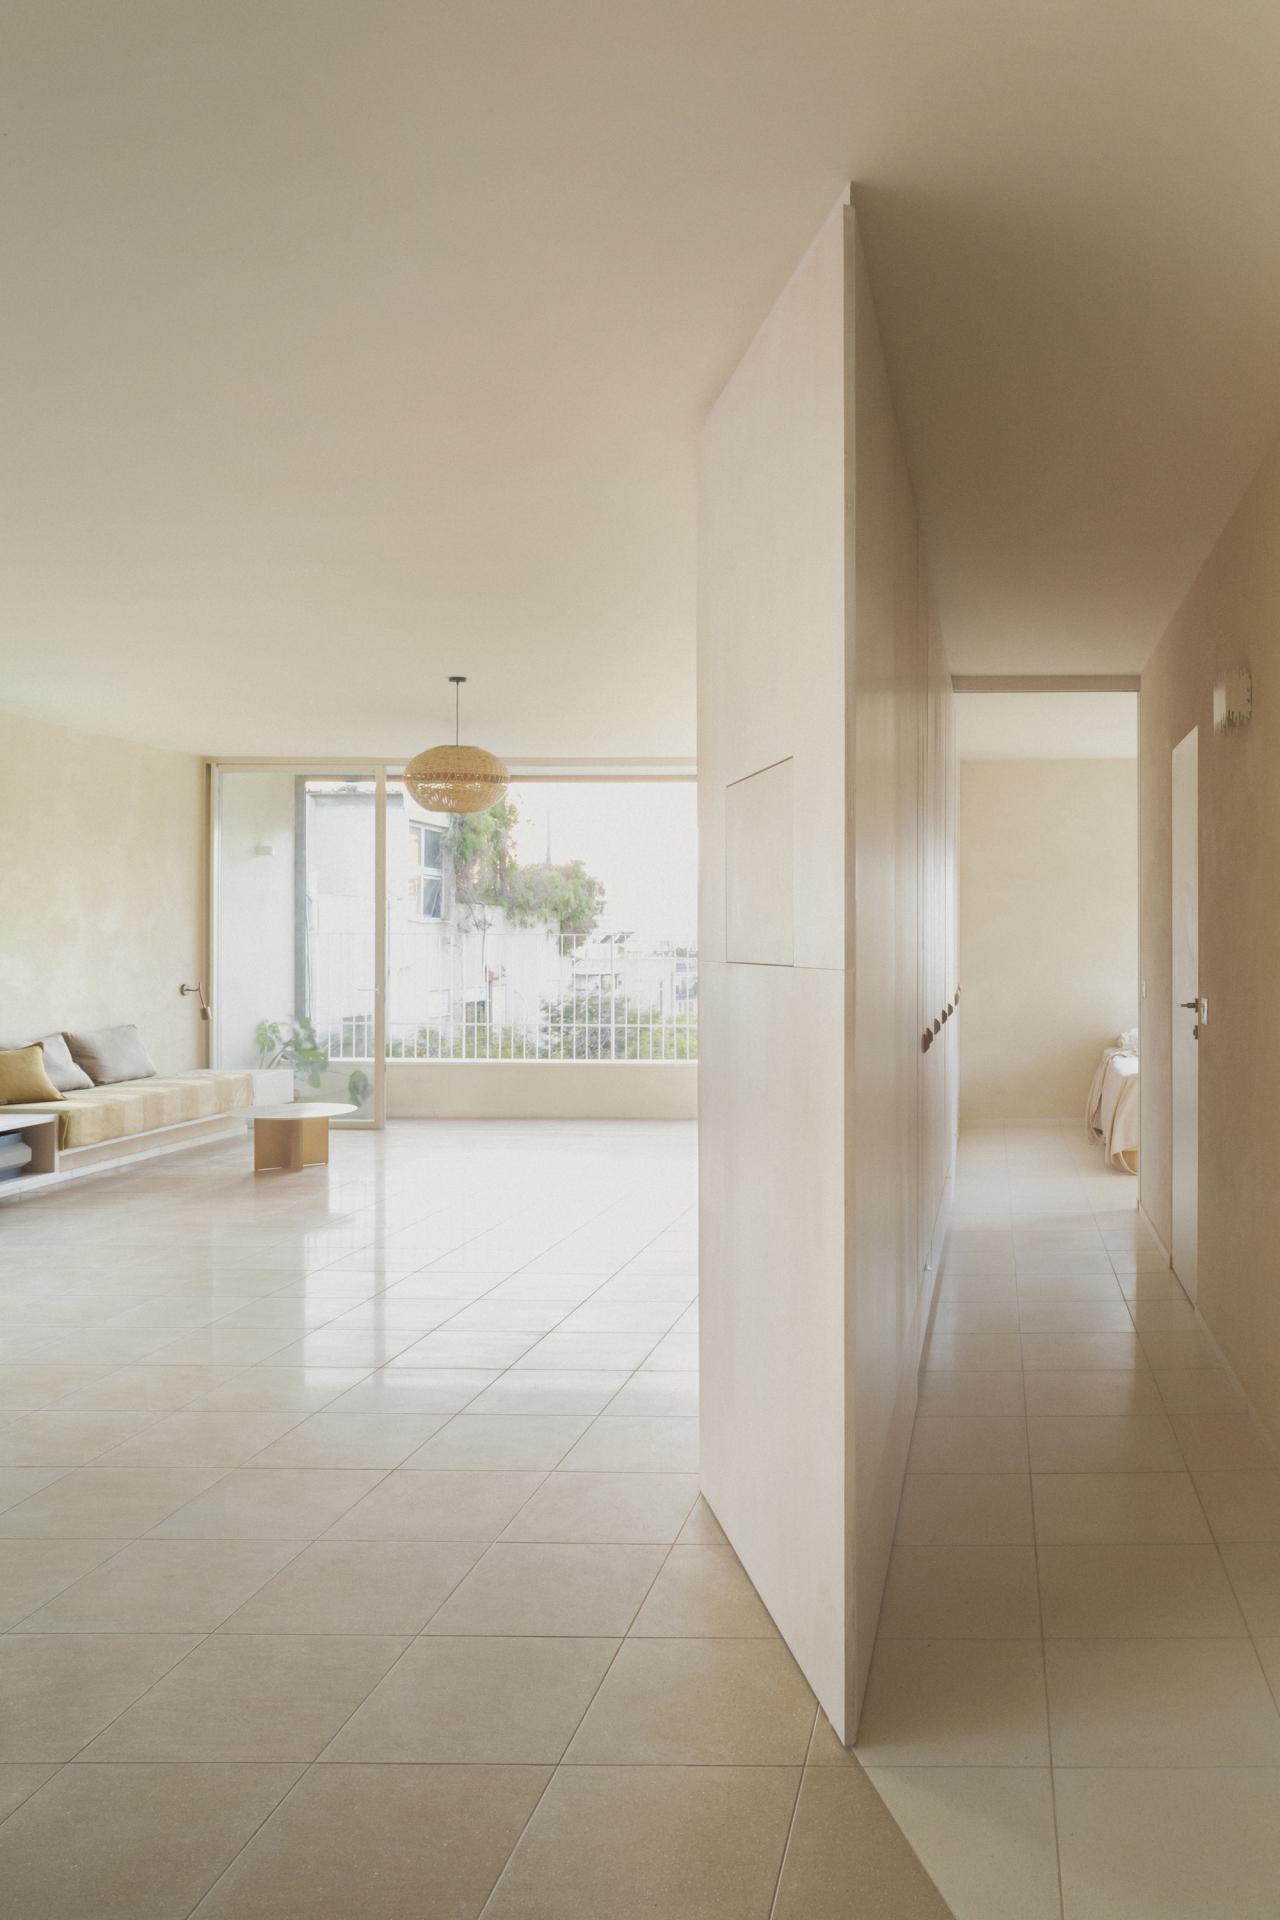 以石膏和水磨石為設計主調，演繹極致的極簡主義治癒住宅